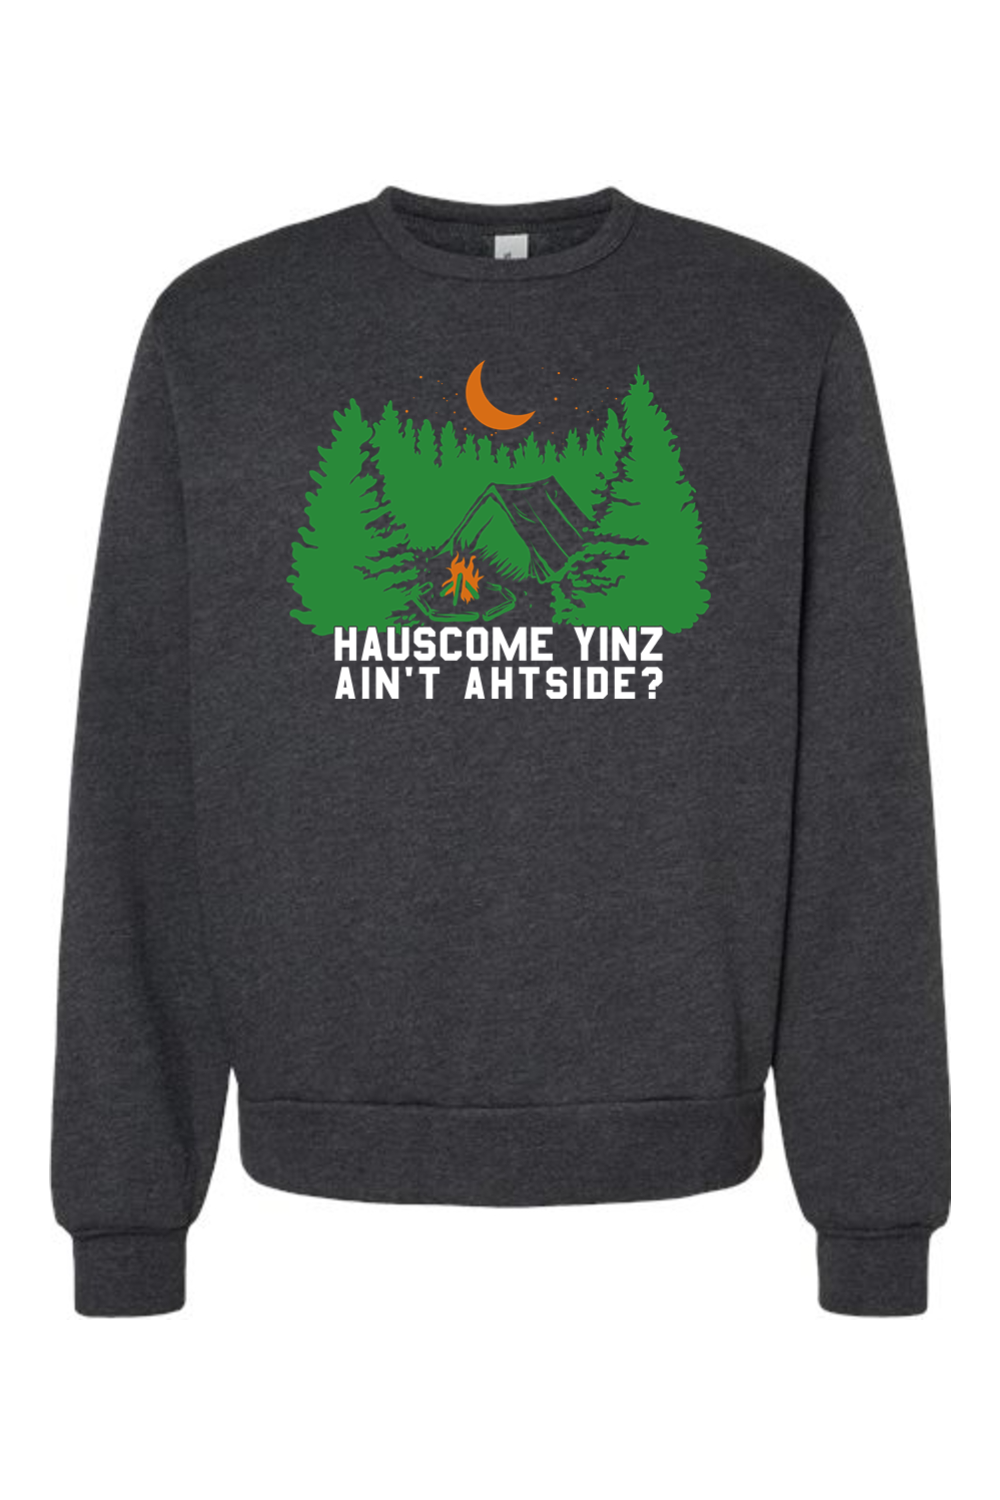 Hauscome Yinz Ain't Ahtside? - Premium Fleece Crewneck Sweatshirt - Yinzylvania